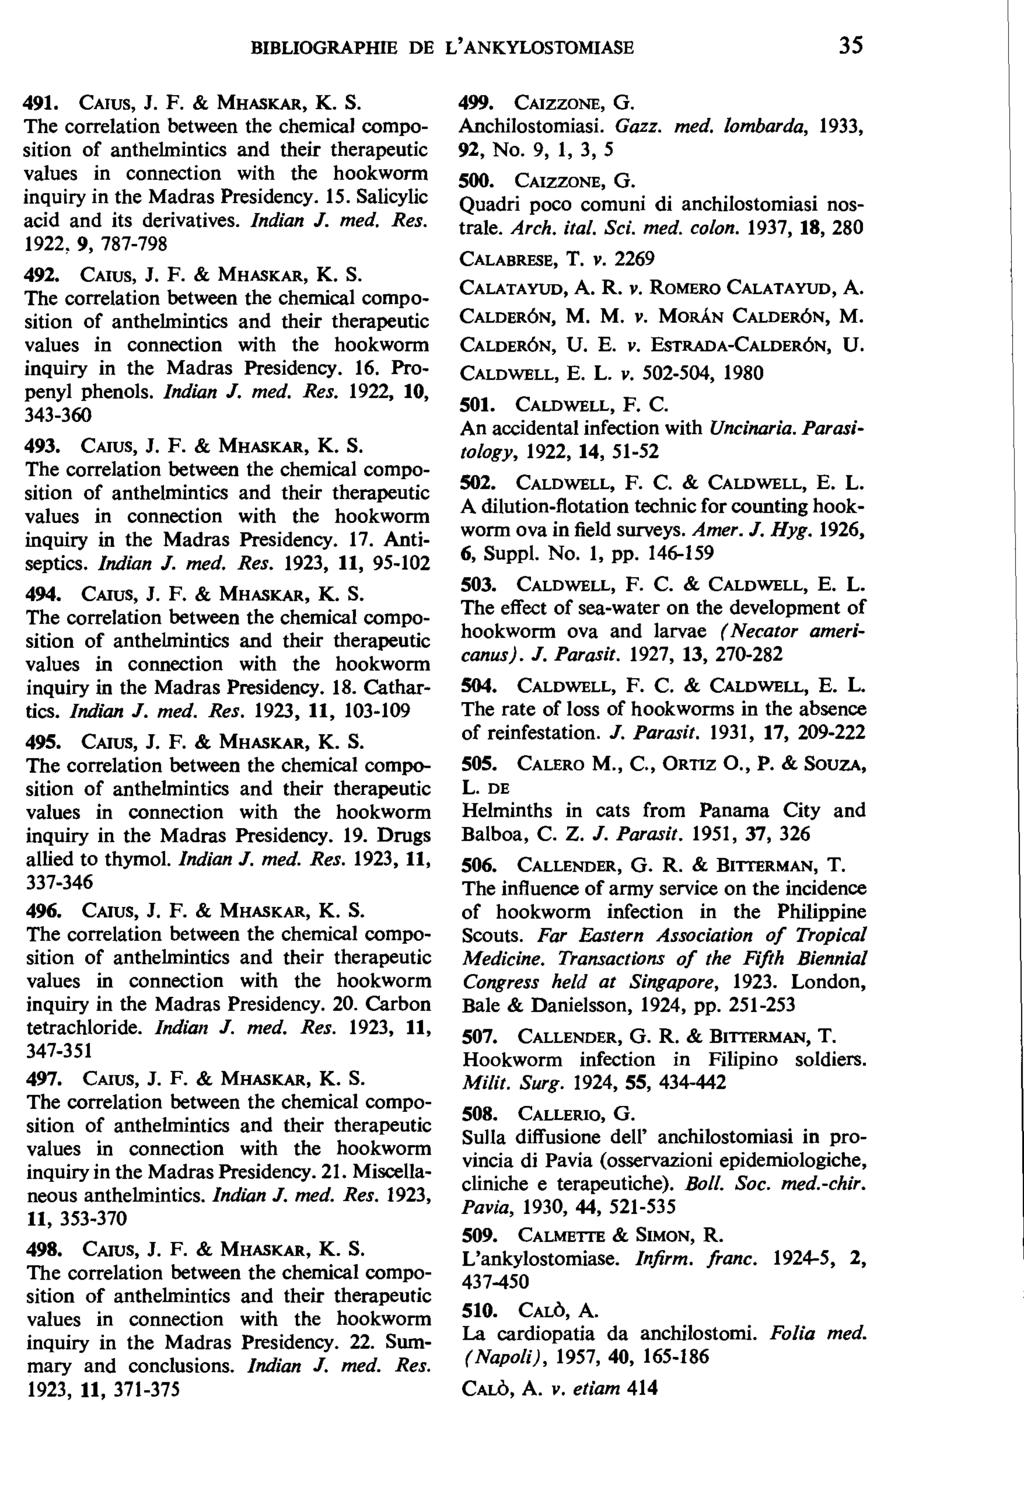 BIBLIOGRAPHffi DE L' ANKYLOSTOMIASE 35 491. CAIUS, J. F. & MHASKAR, K. S.